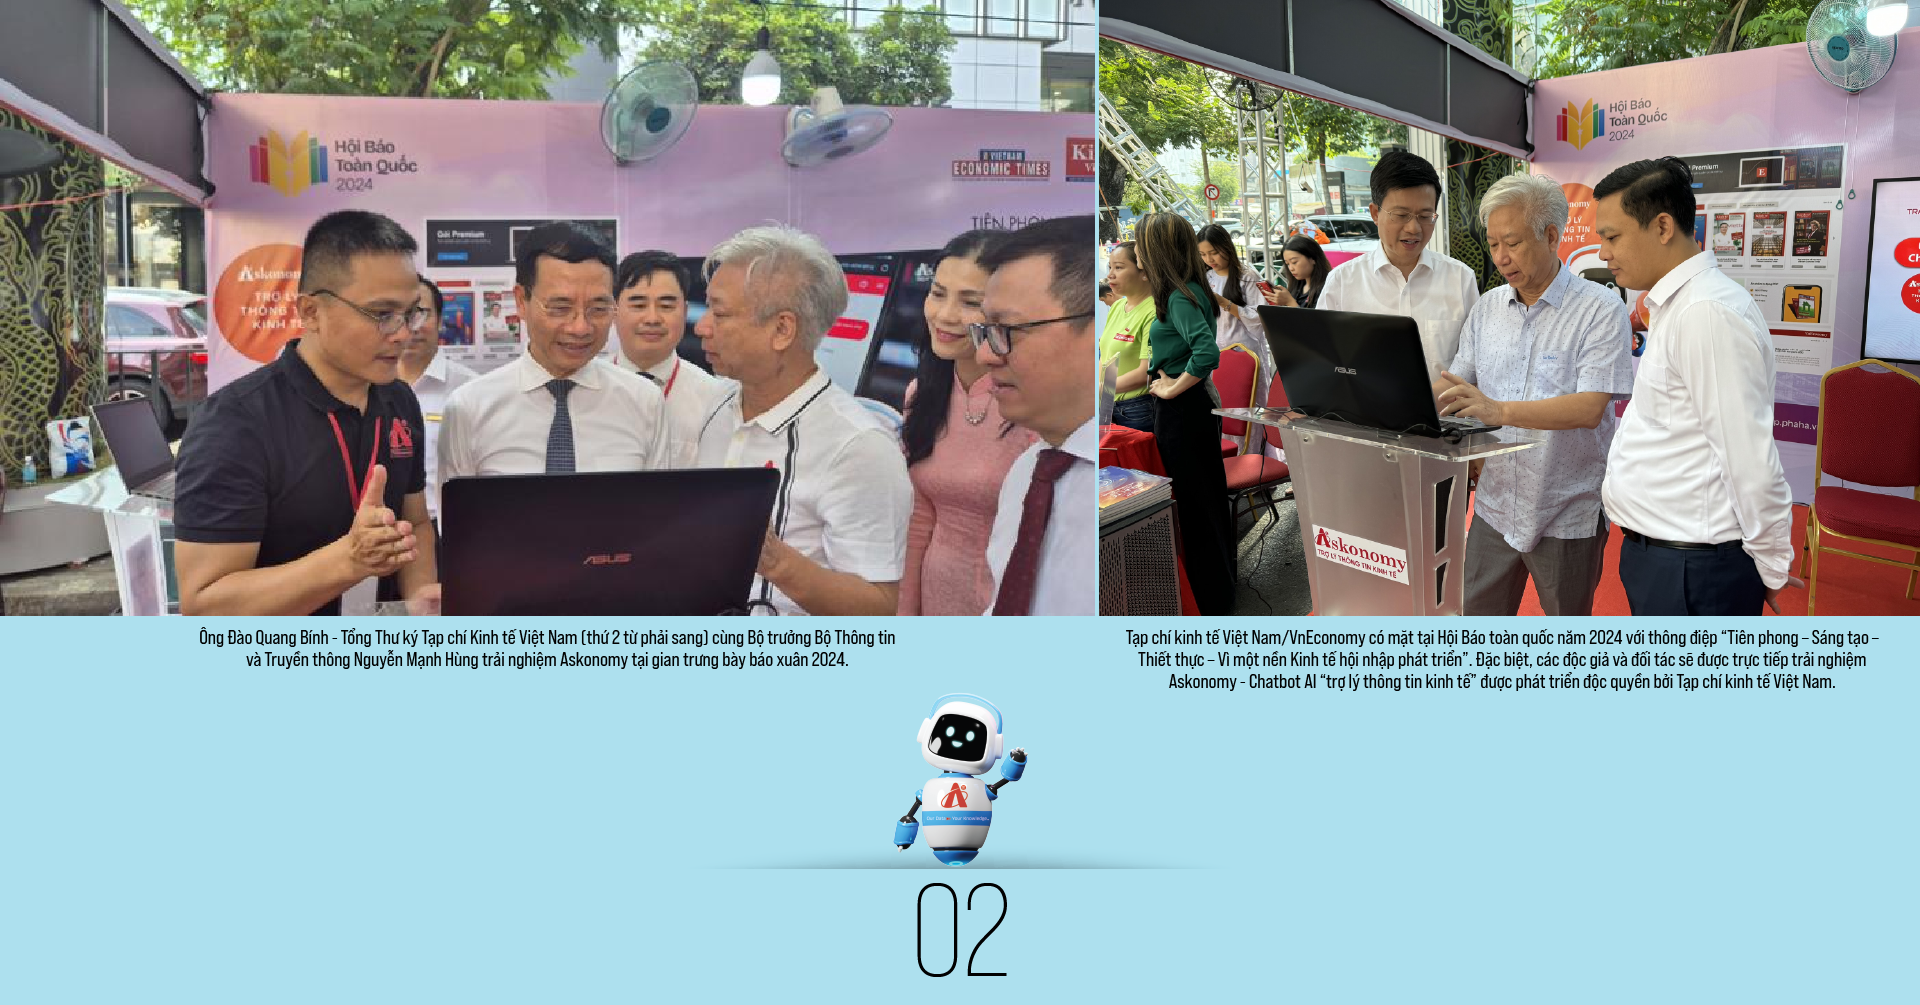 Báo chí AI: Hướng đi mới để phát triển kinh tế báo chí Việt Nam  - Ảnh 3